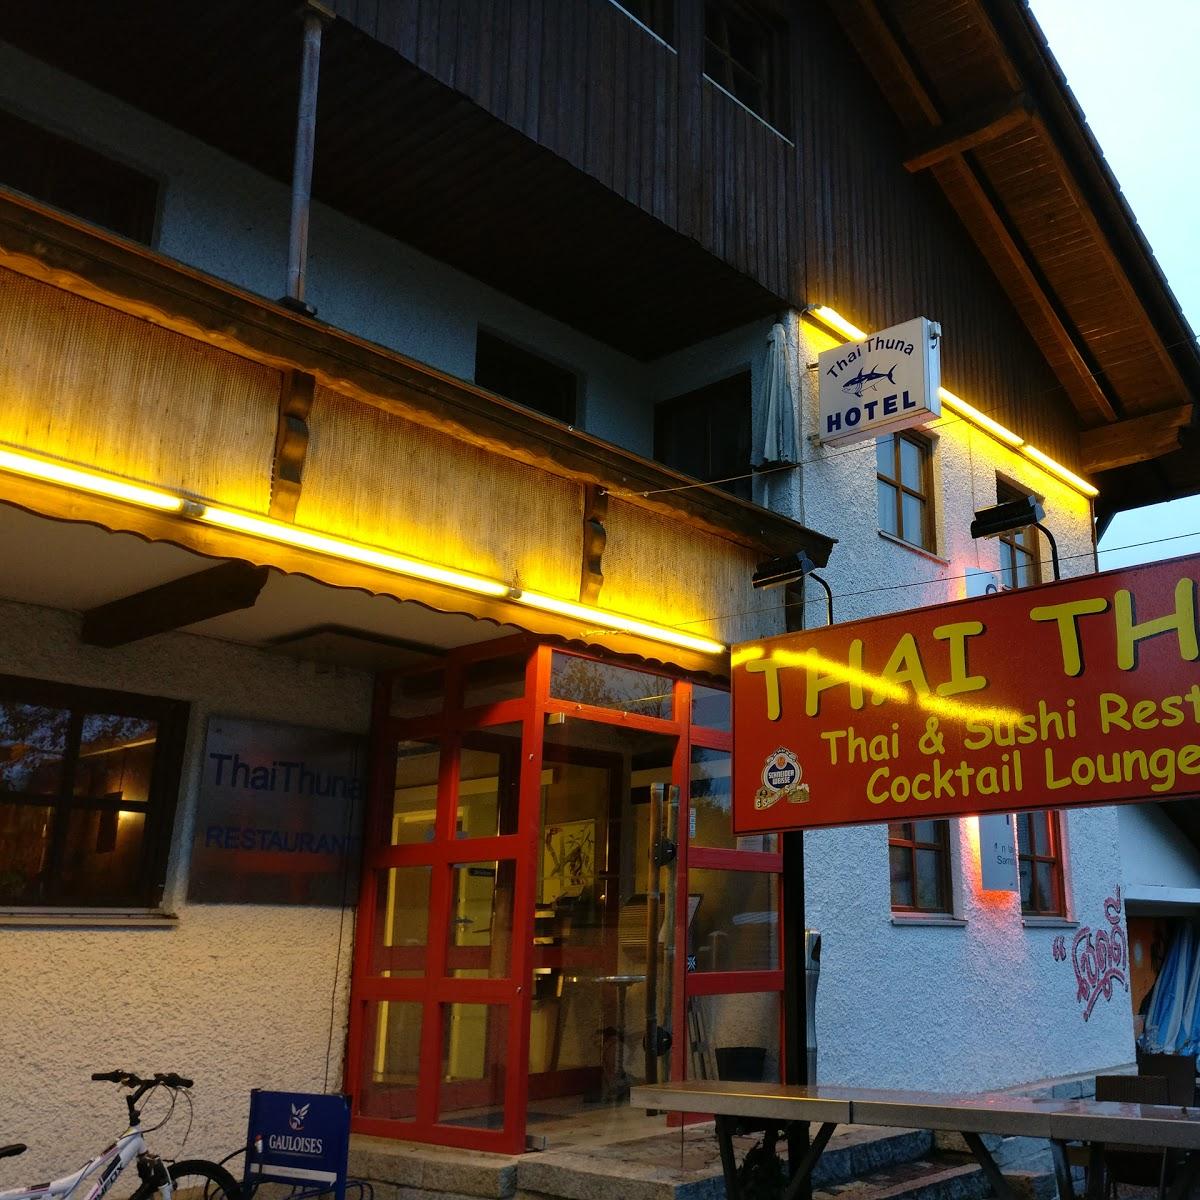 Restaurant "Thaithuna Gästehaus" in  Taufkirchen